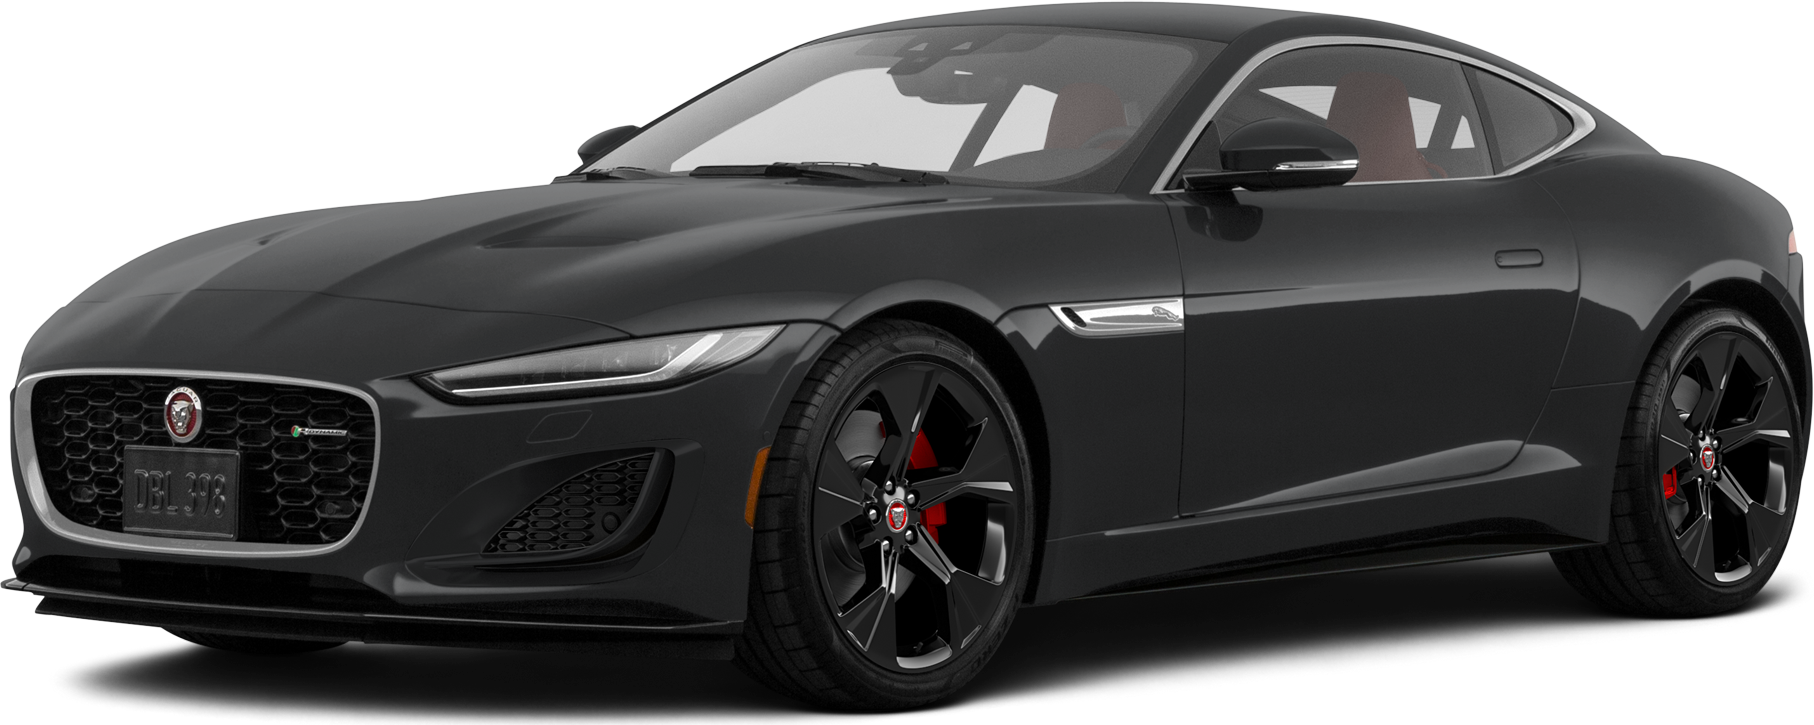 Jaguar Sports Car Models